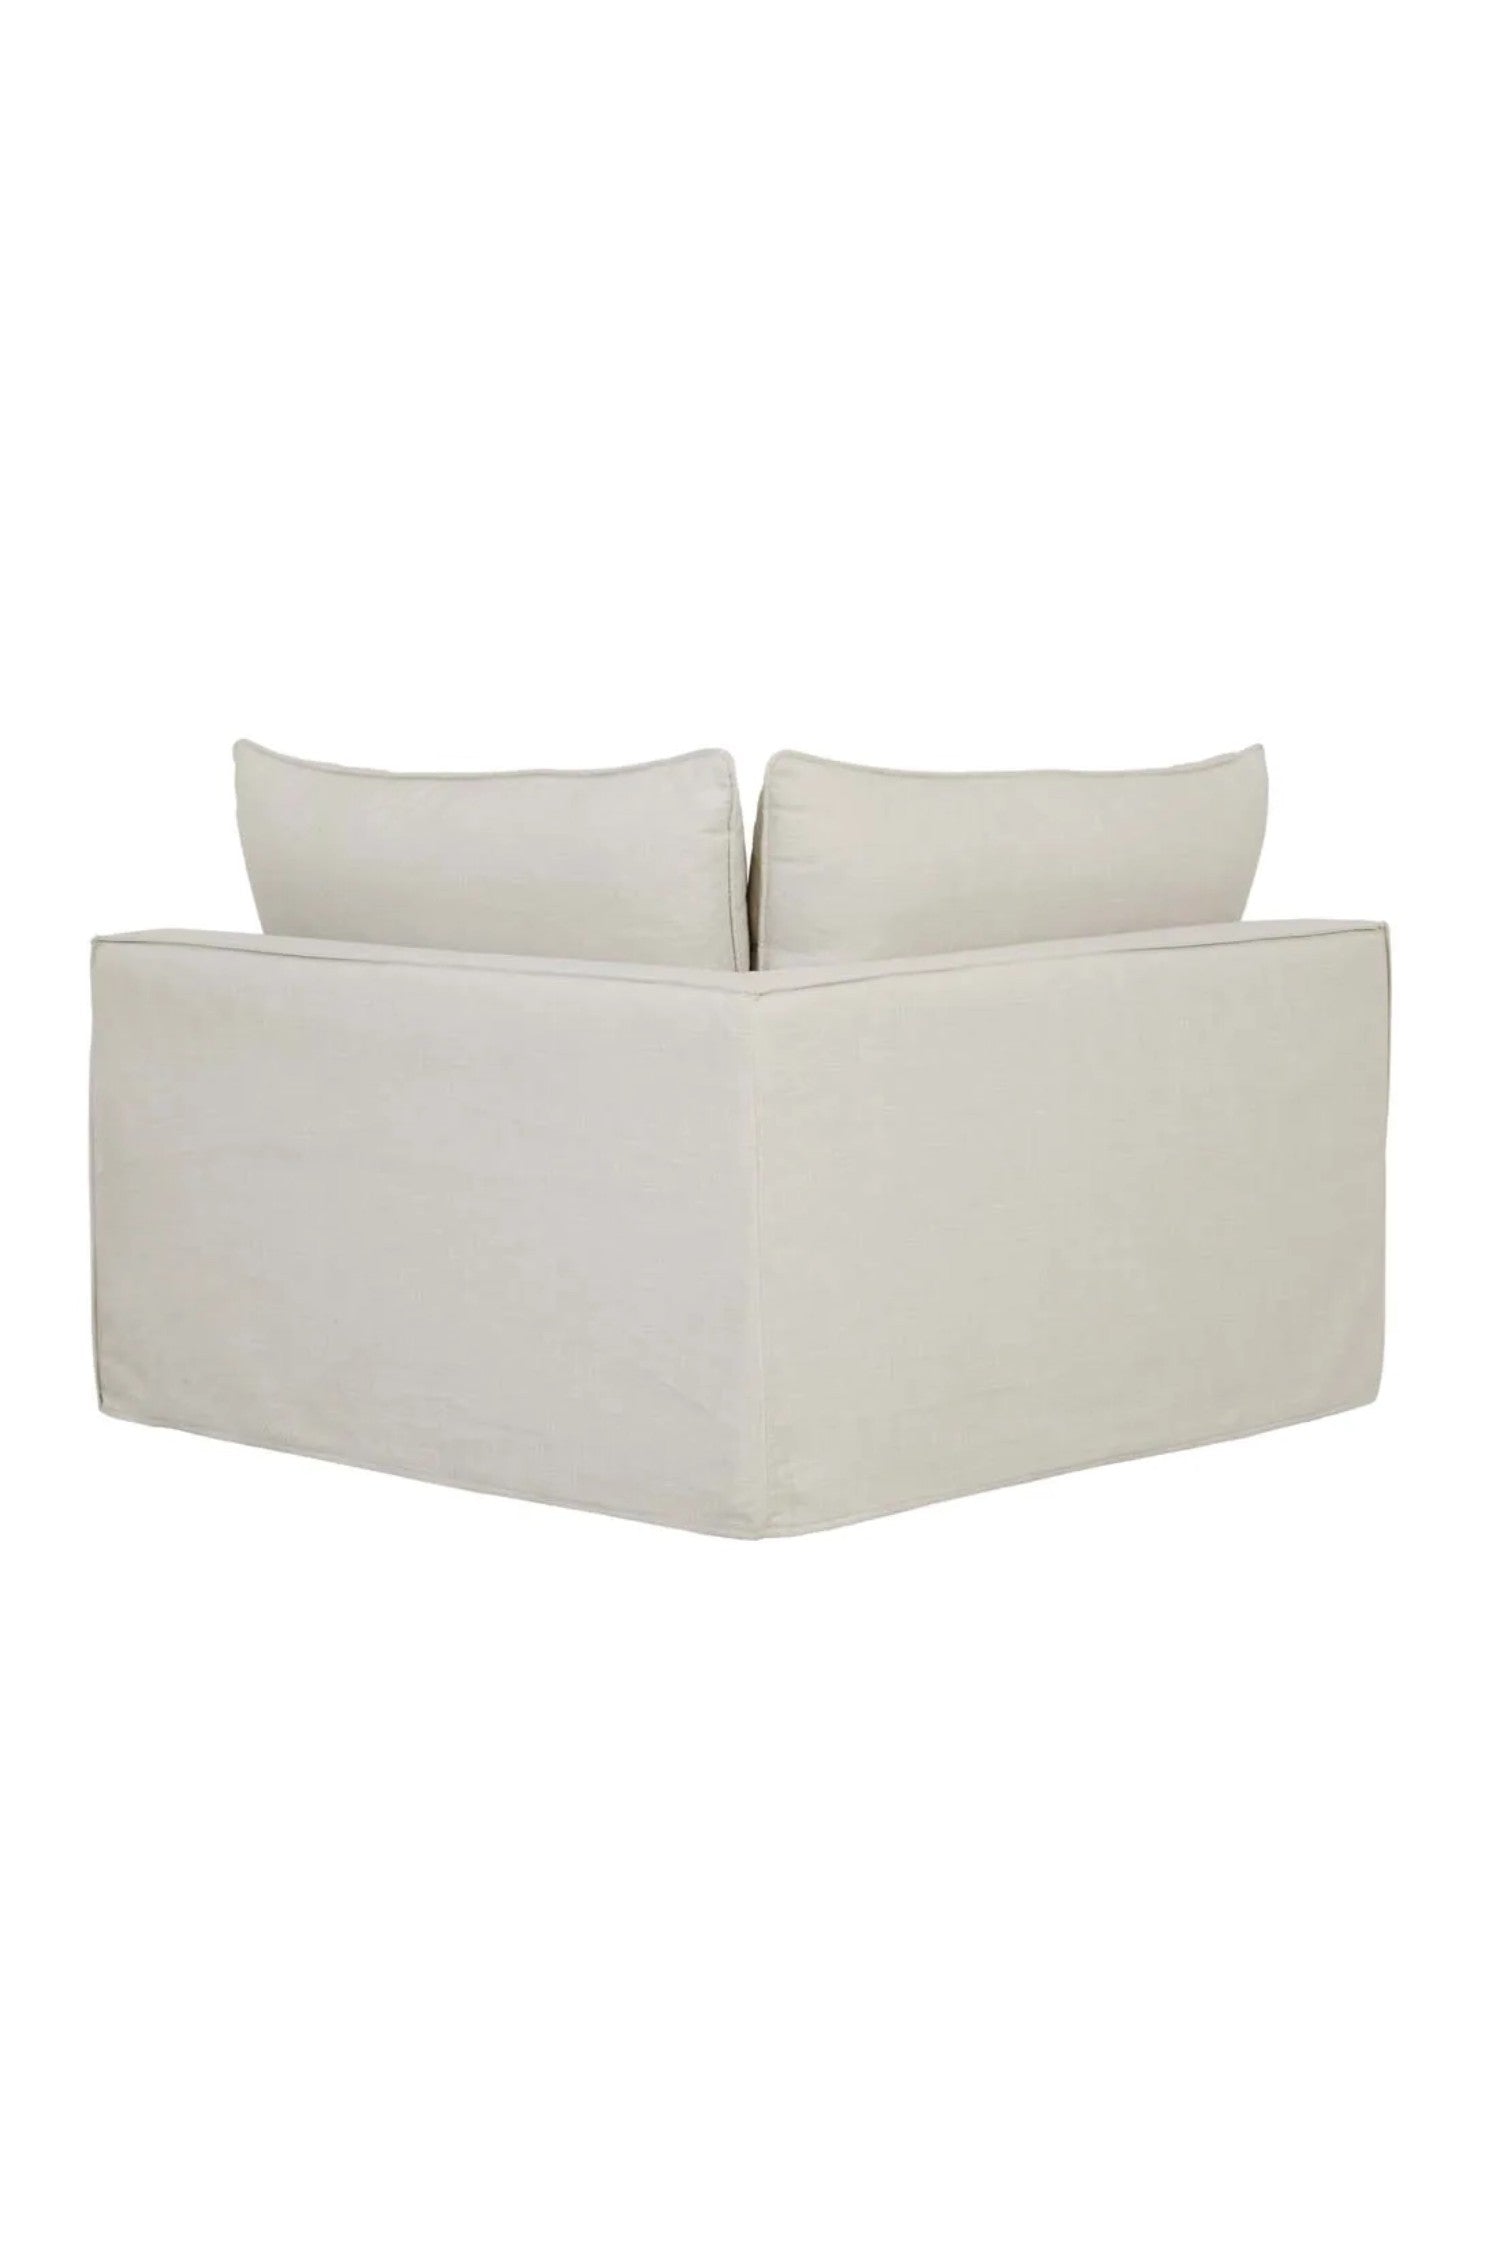 airlie corner sofa parchment